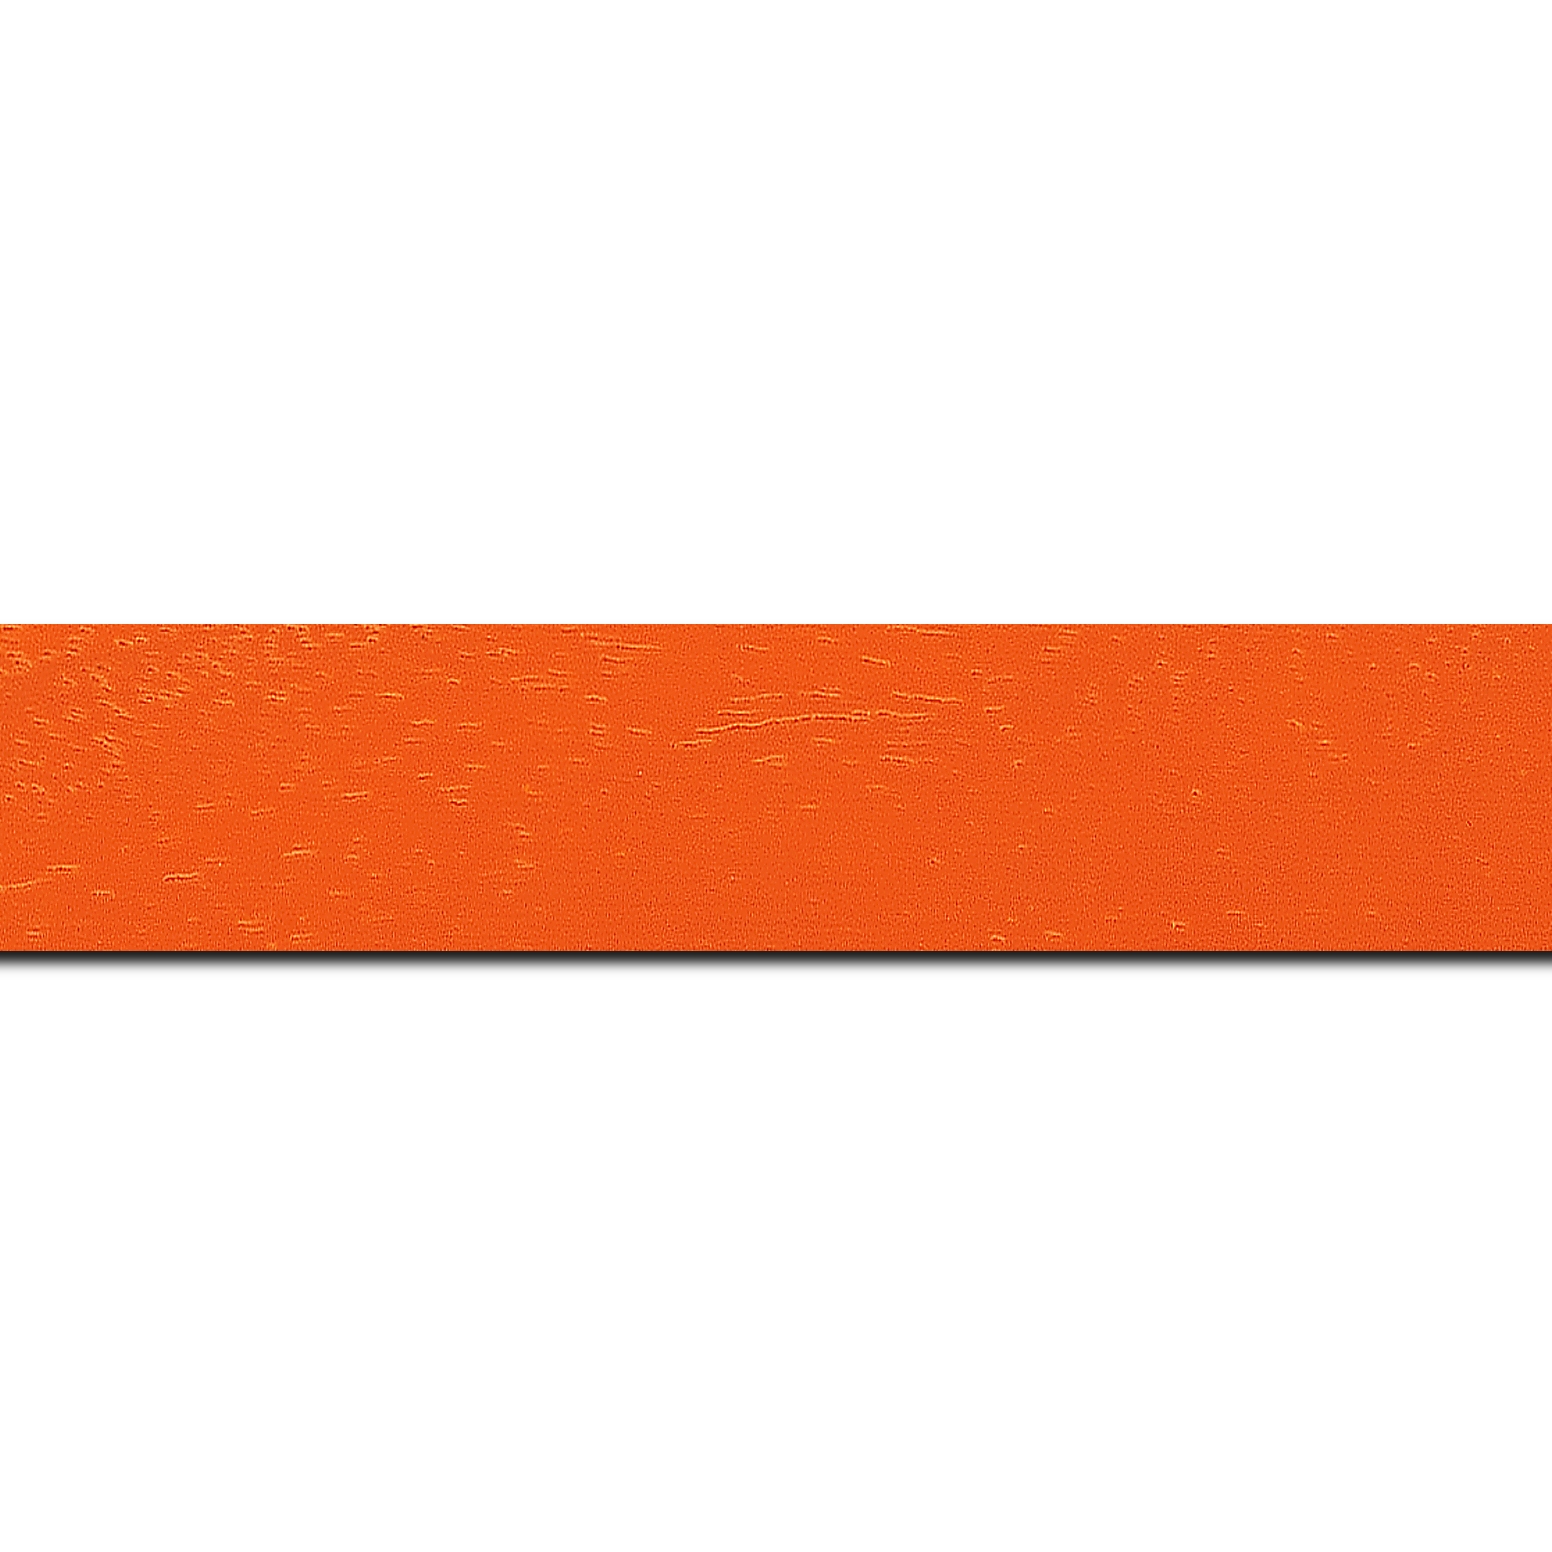 Baguette longueur 1.40m bois profil plat largeur 3cm couleur orange tonique satiné